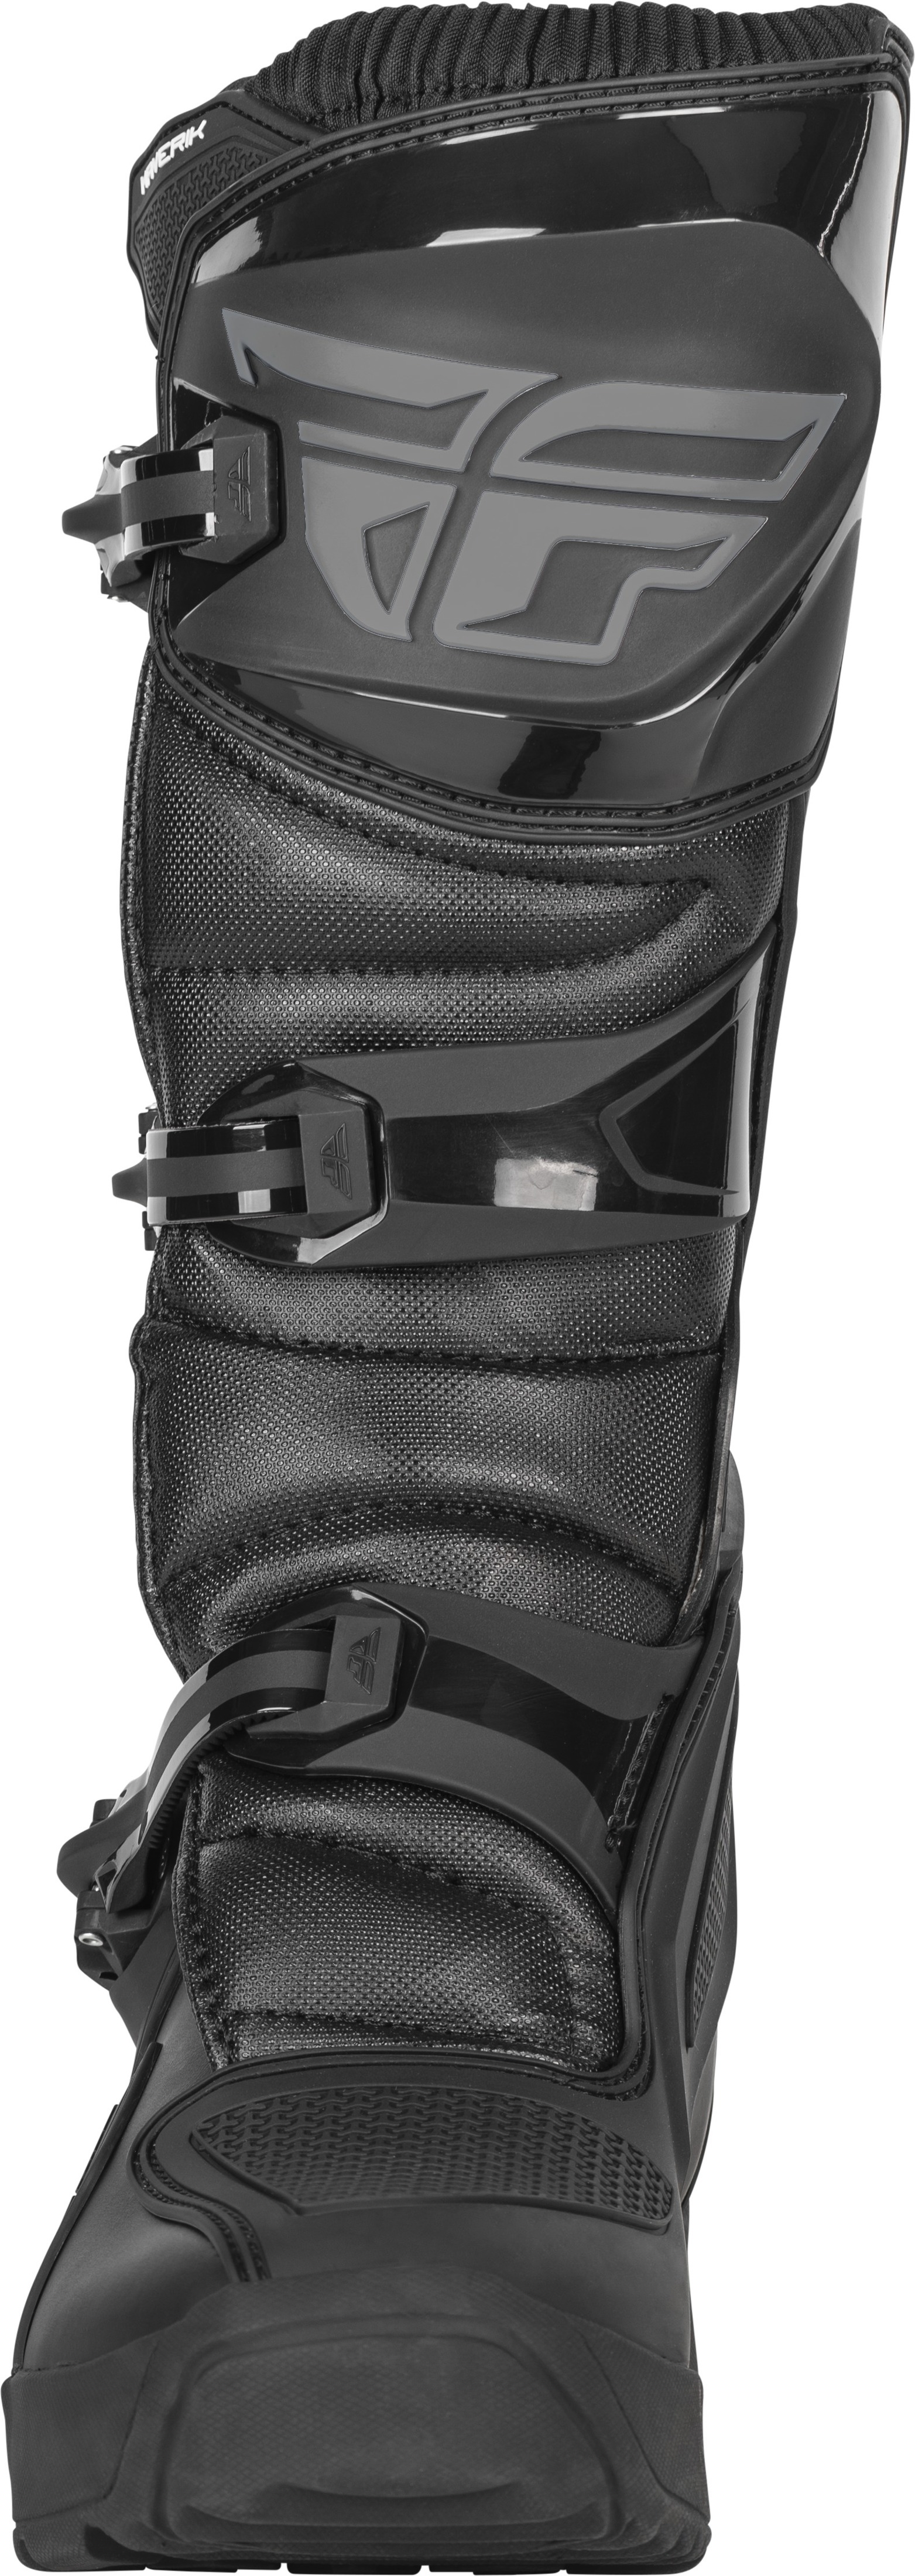 Maverik Enduro Boot Black Size 10 - Click Image to Close